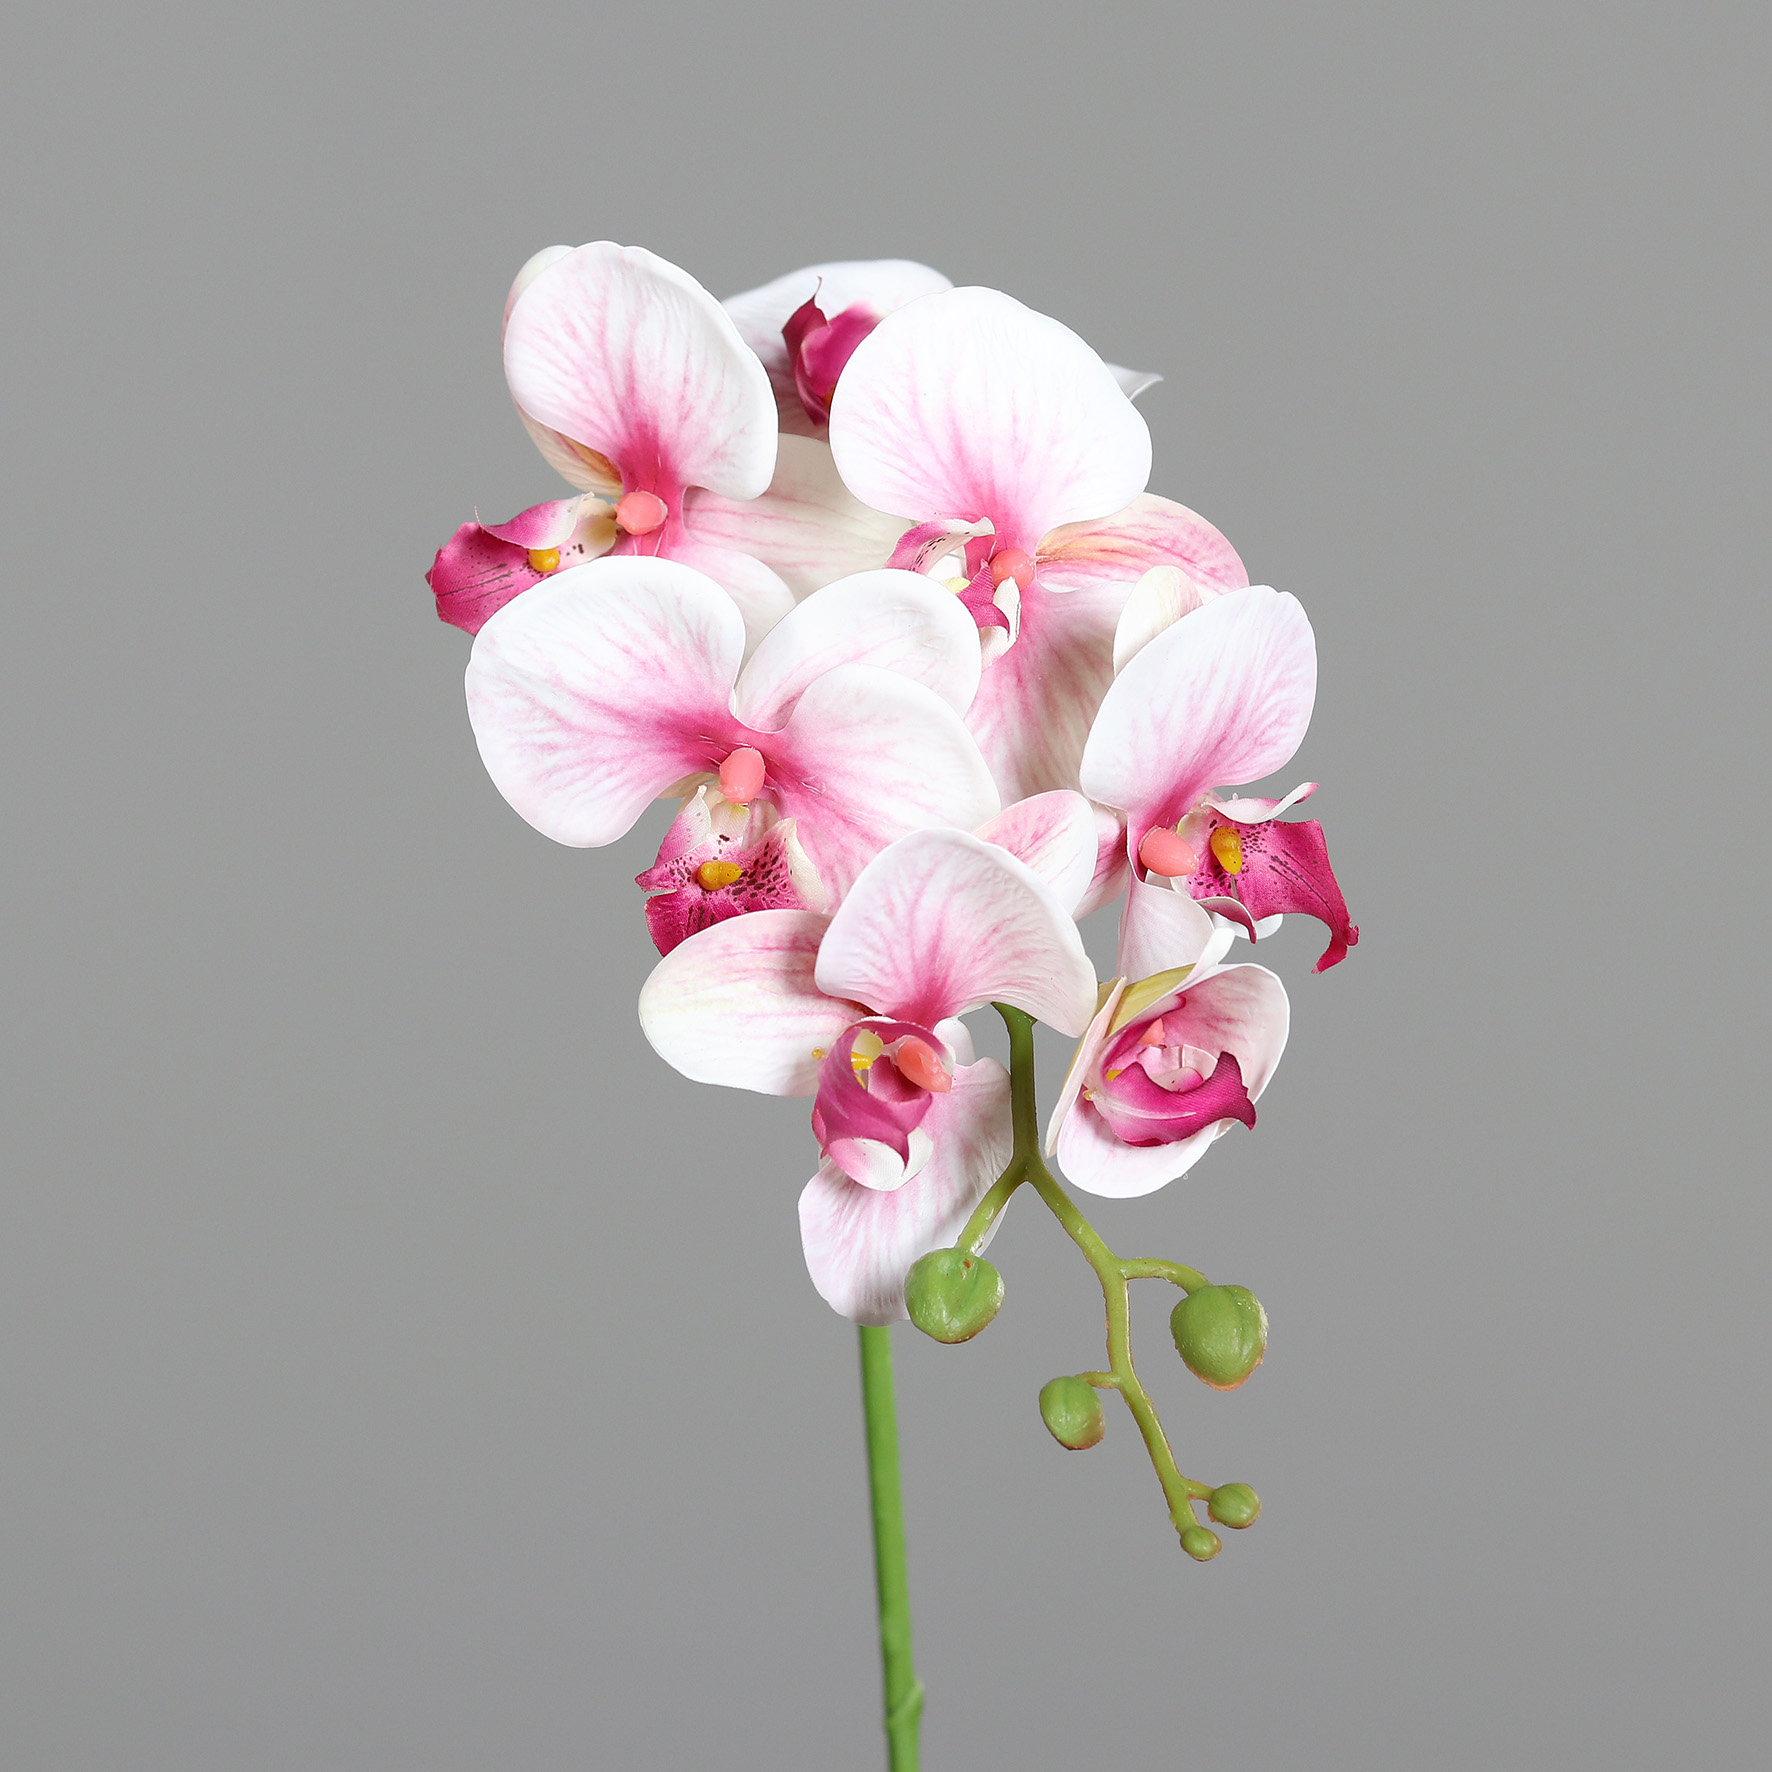 Orchideenzweig Real Touch 78cm pink-weiß DP Kunstblumen künstliche Orchidee Phalaenopsis Blumen